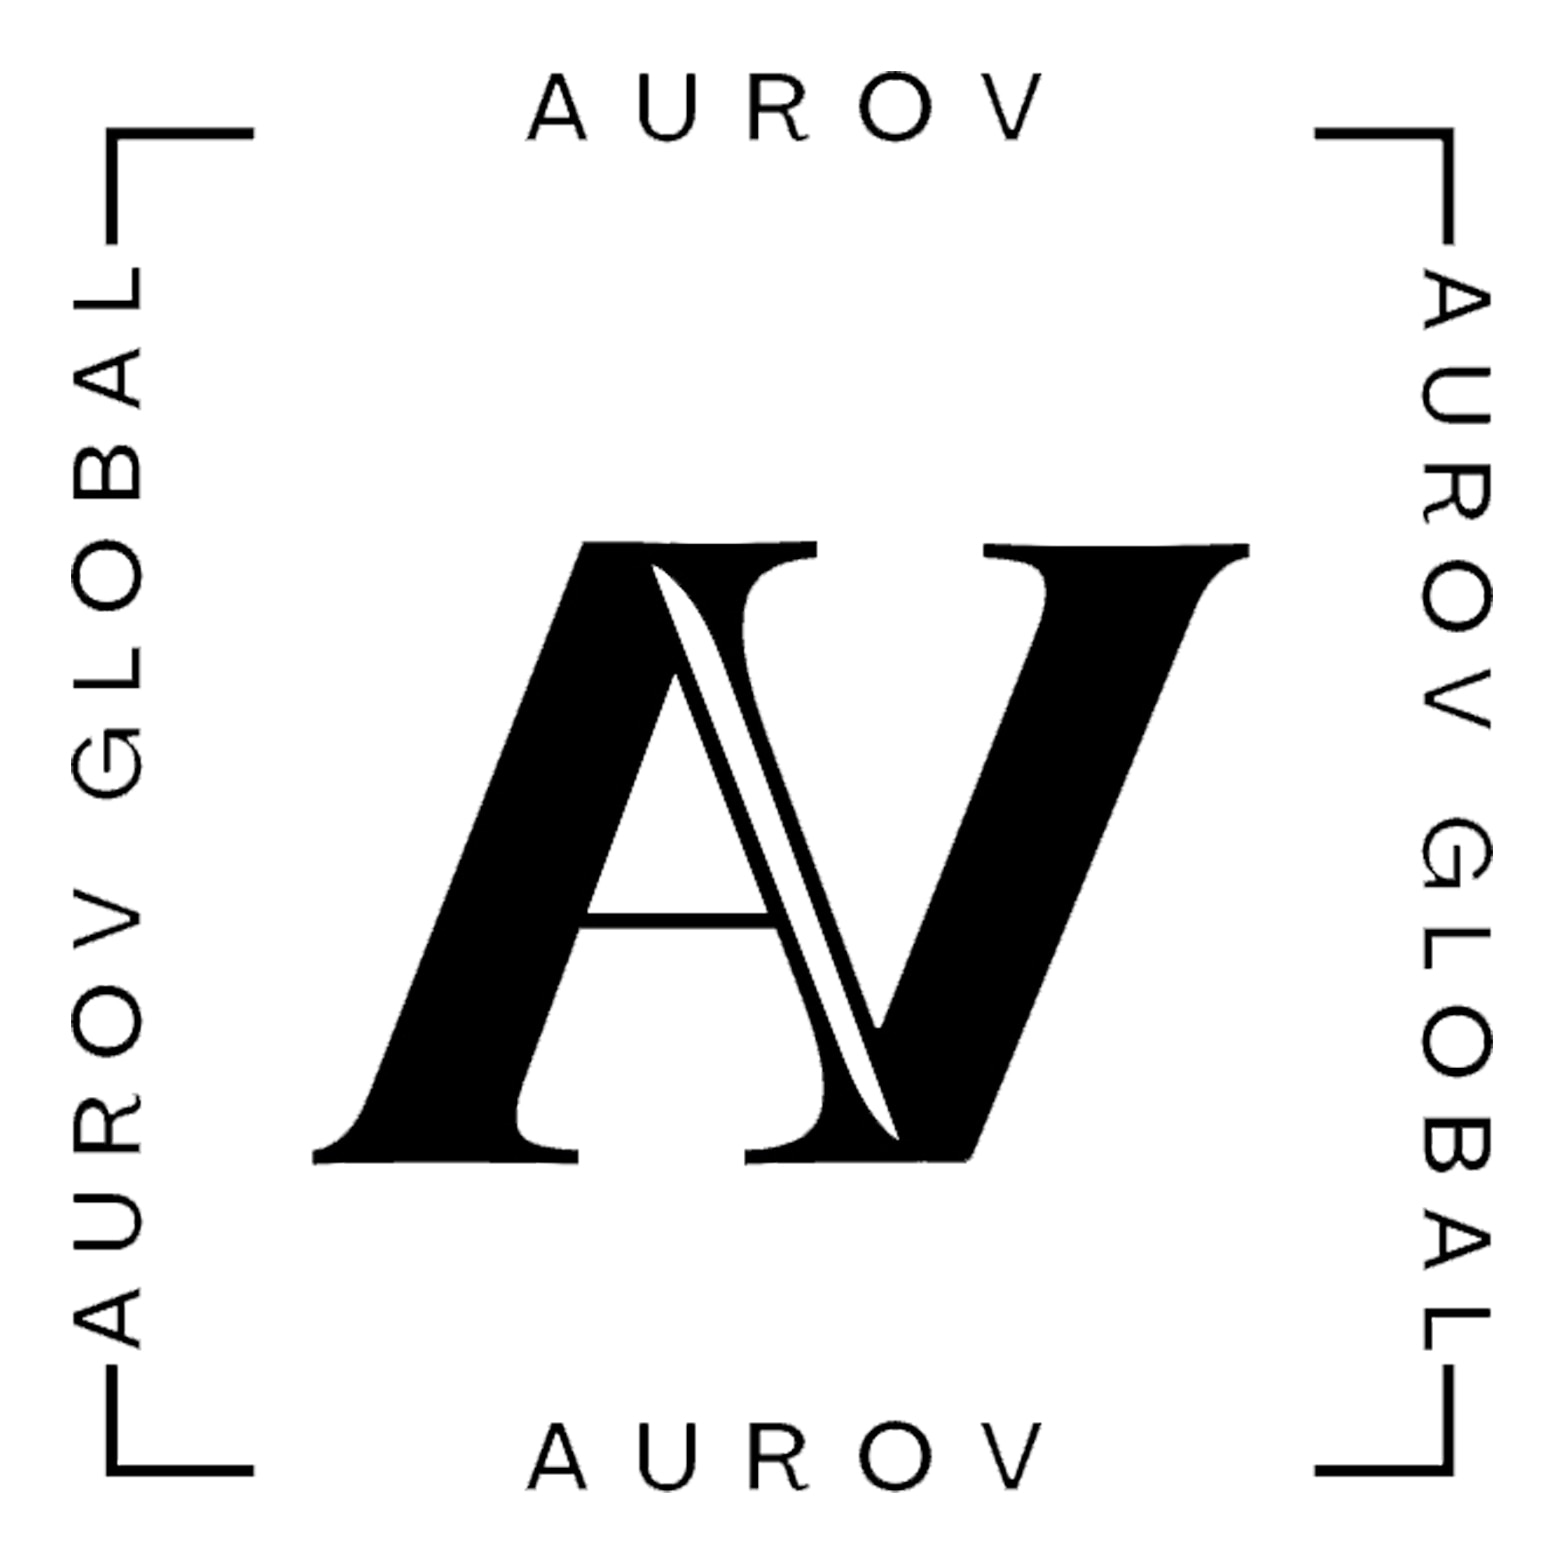 Aurov